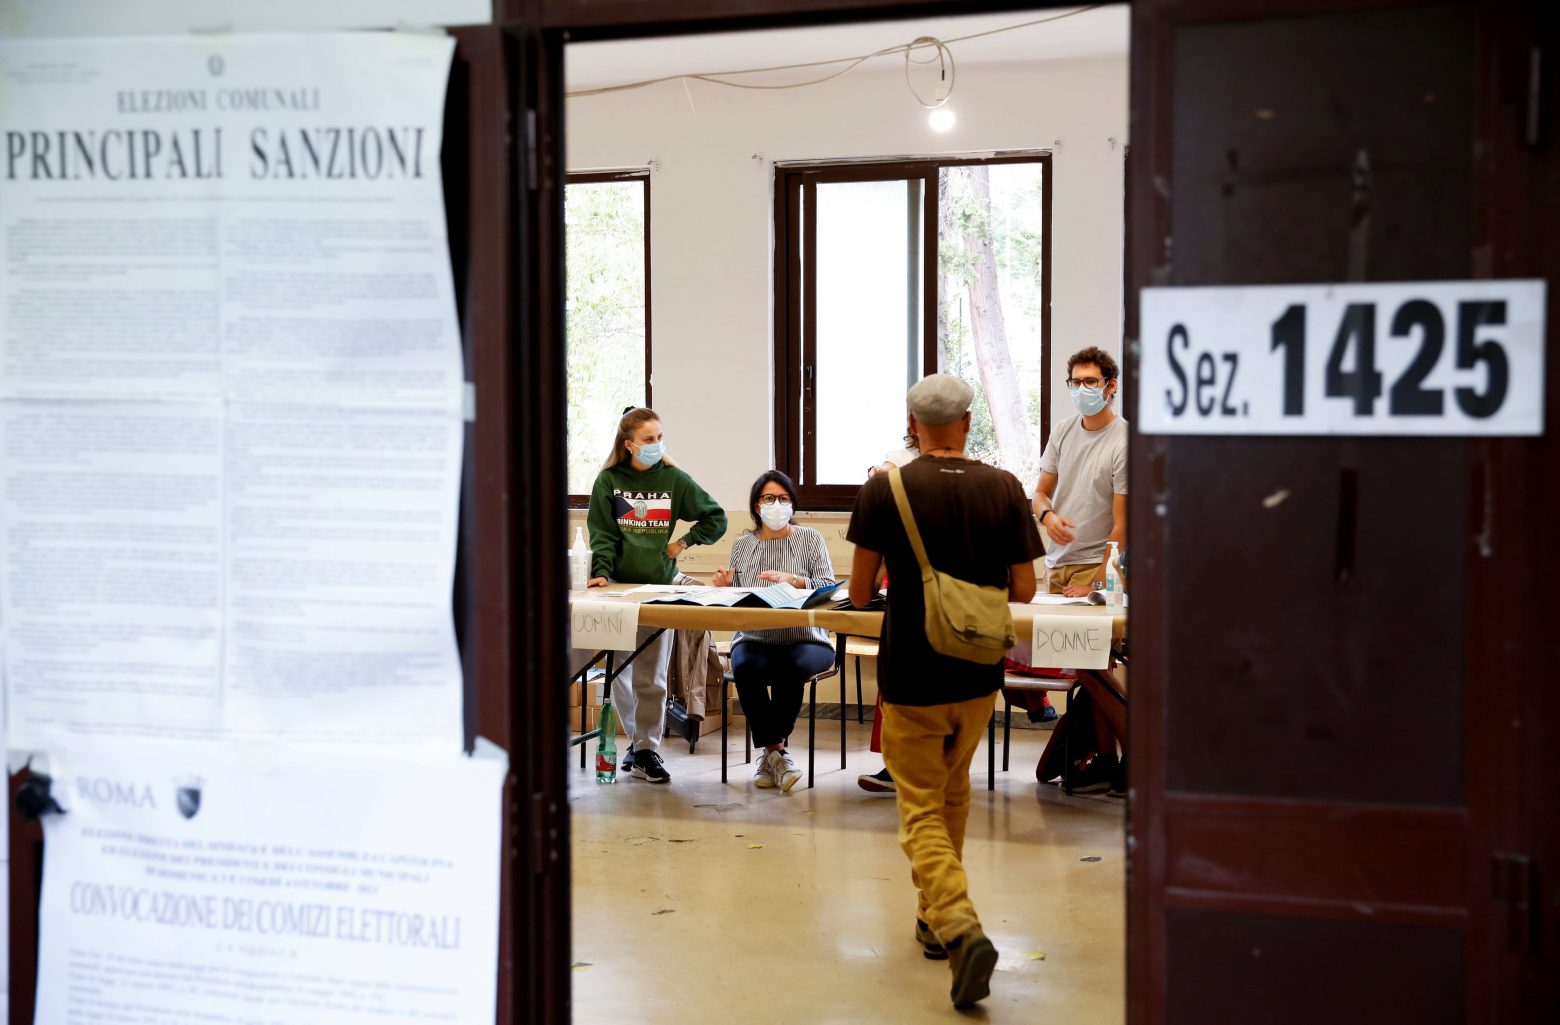 Ιταλία - Τι δείχνουν τα exit poll και τα πρώτα αποτελέσματα των αυτοδιοικητικών εκλογών